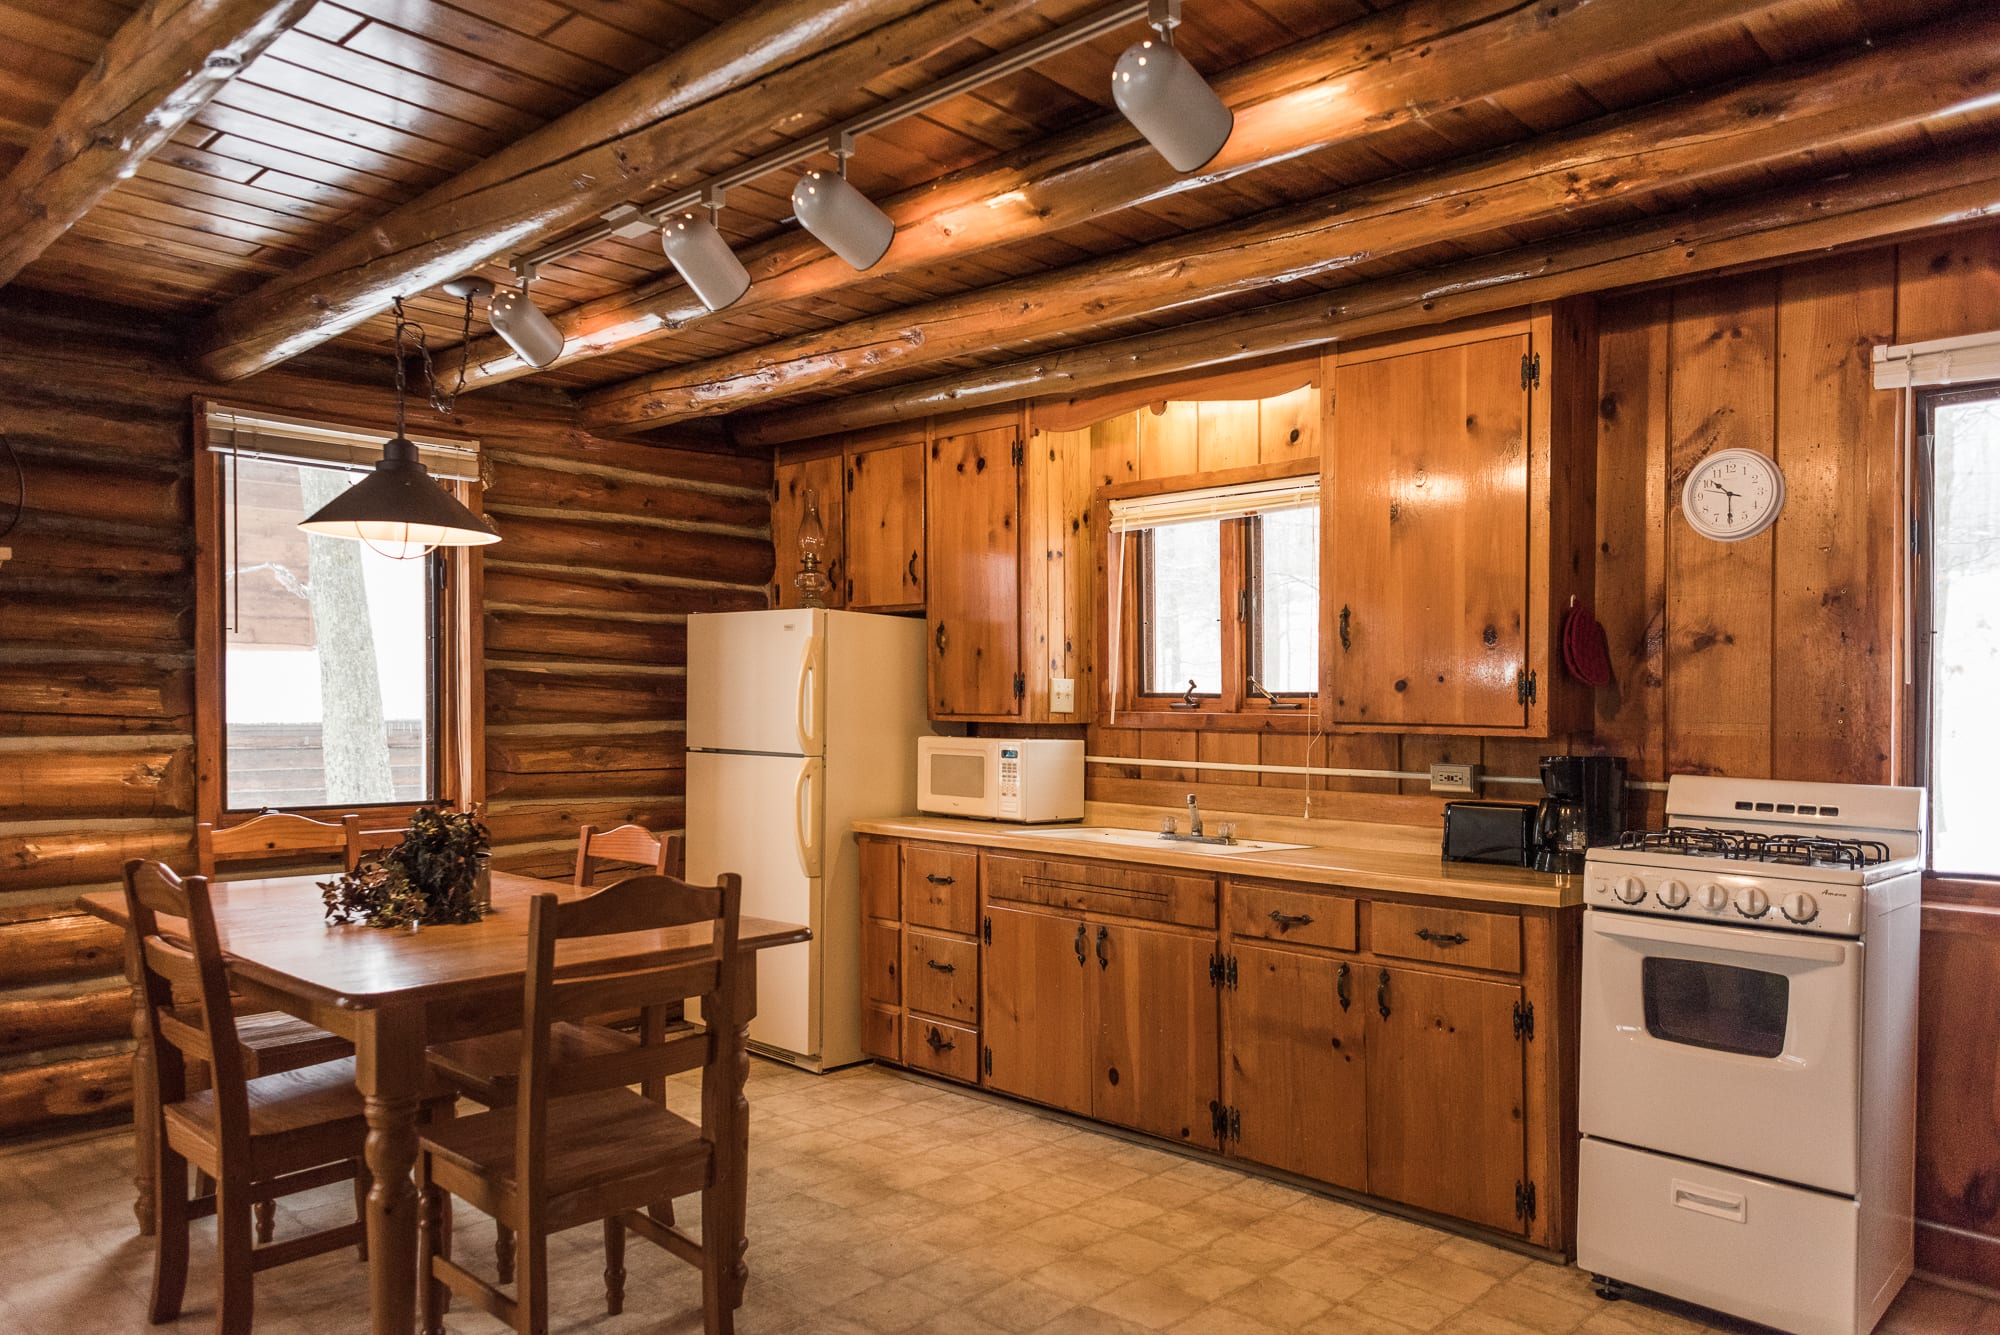 Knotty Pine cabin kitchen